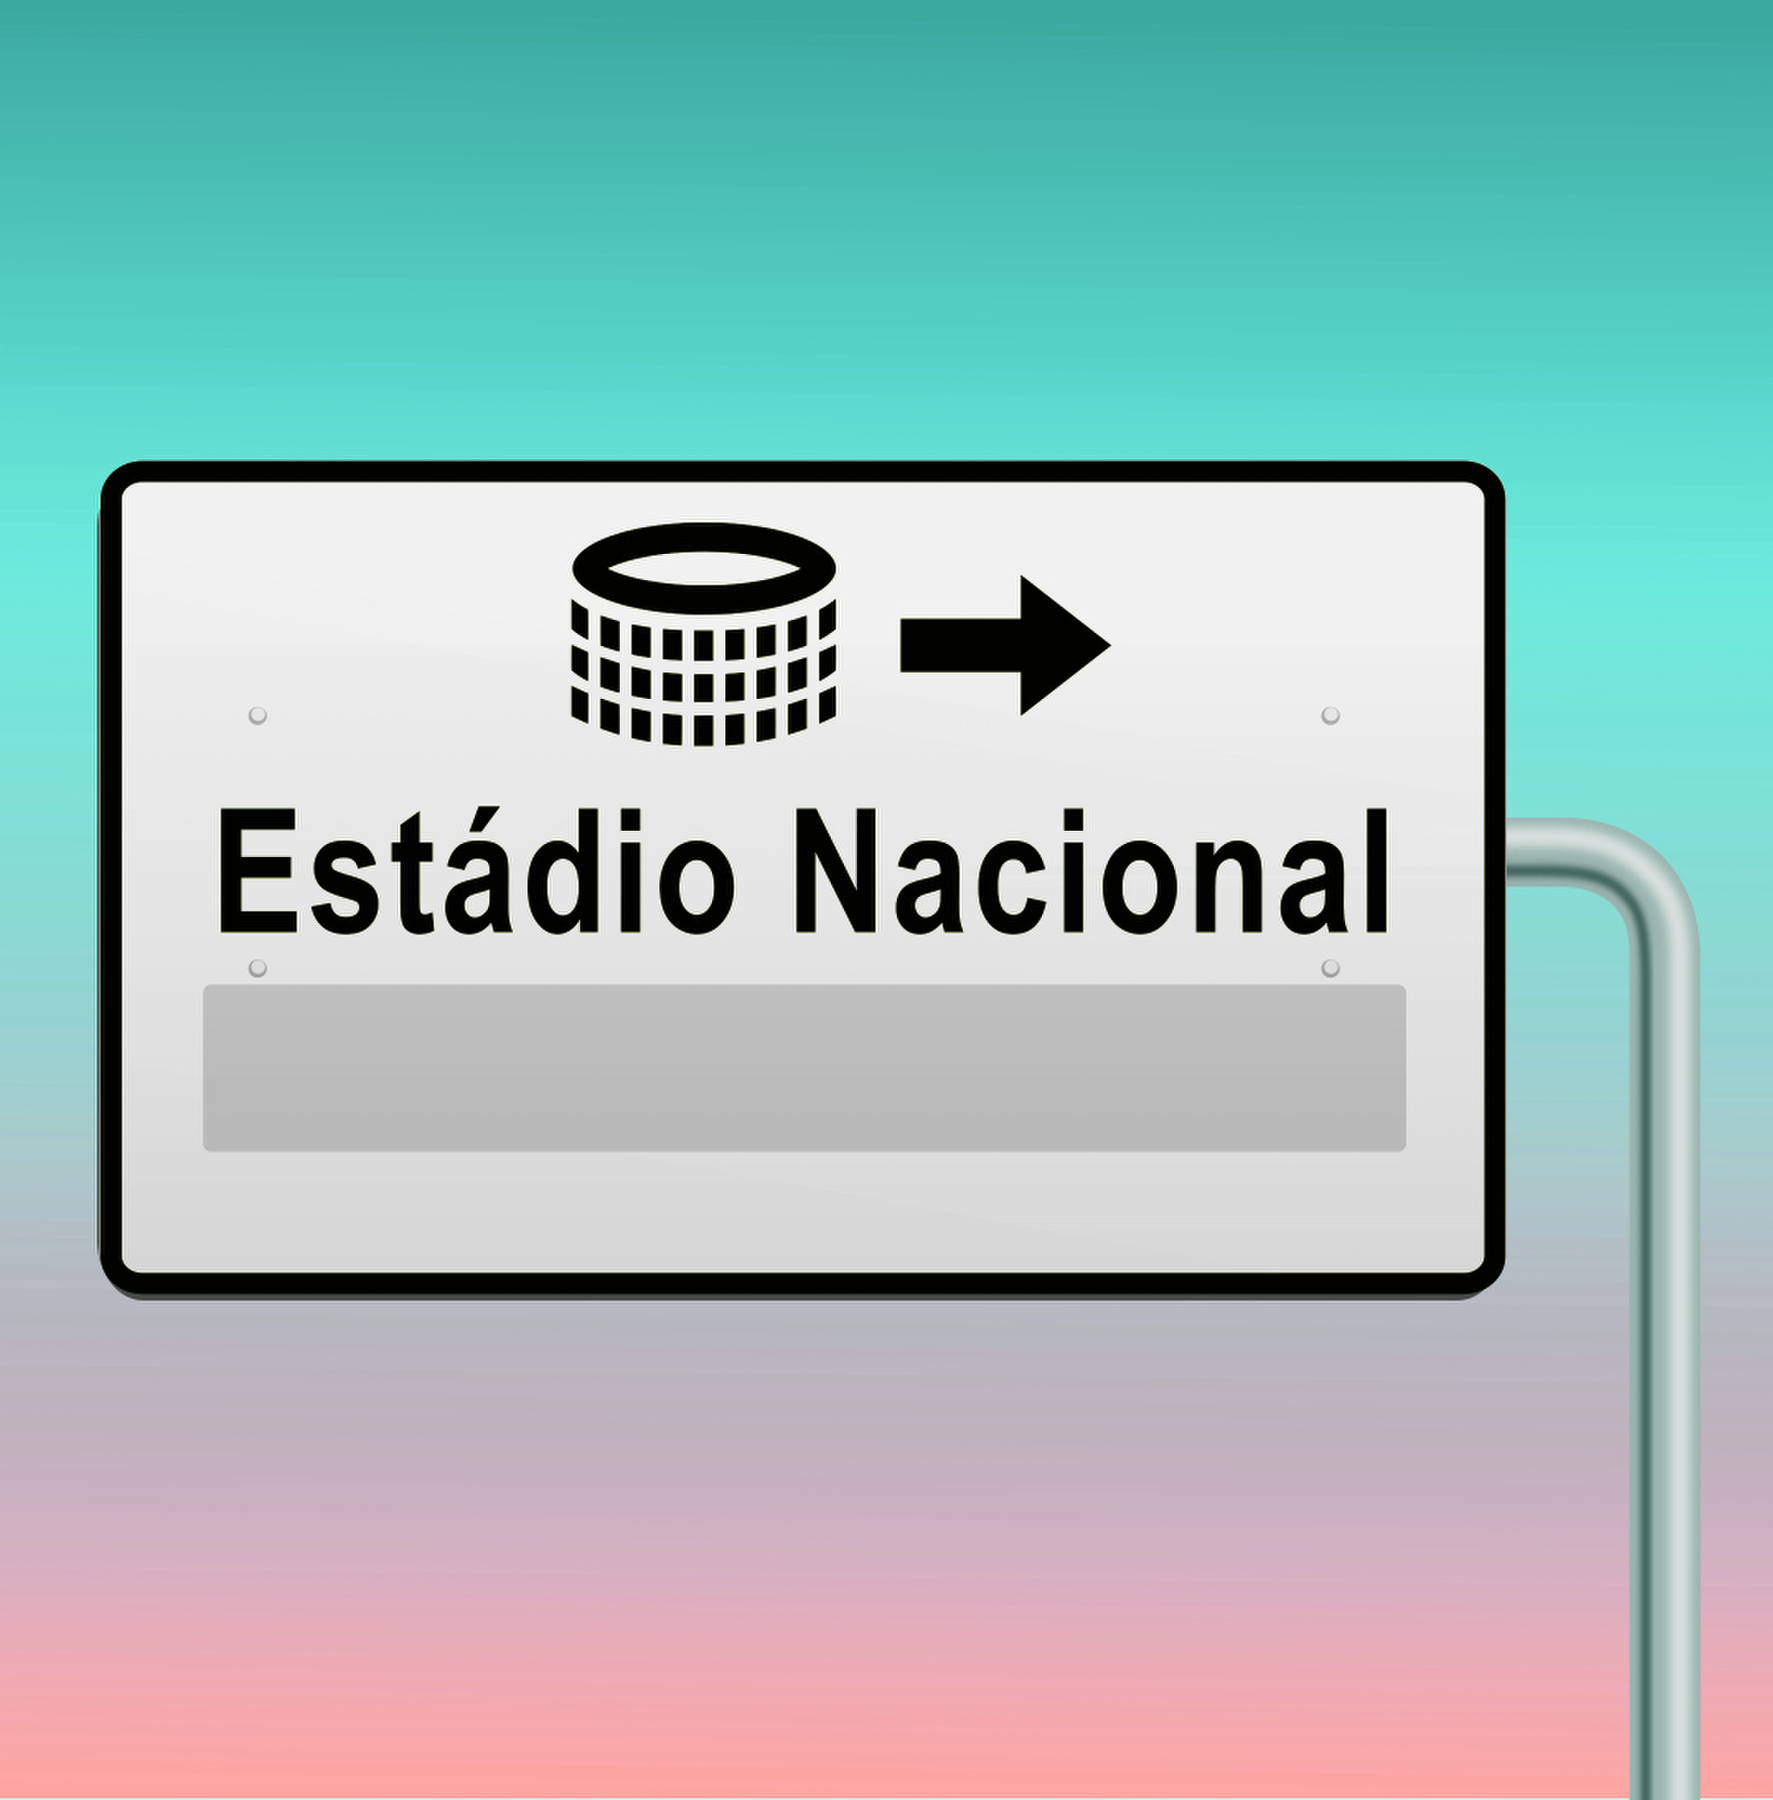 Ilustração. Placa de trânsito cinza indicando com seta para a direita um ícone de estádio em preto com o texto: Estádio Nacional. Na parte inferior, espaço para resposta.